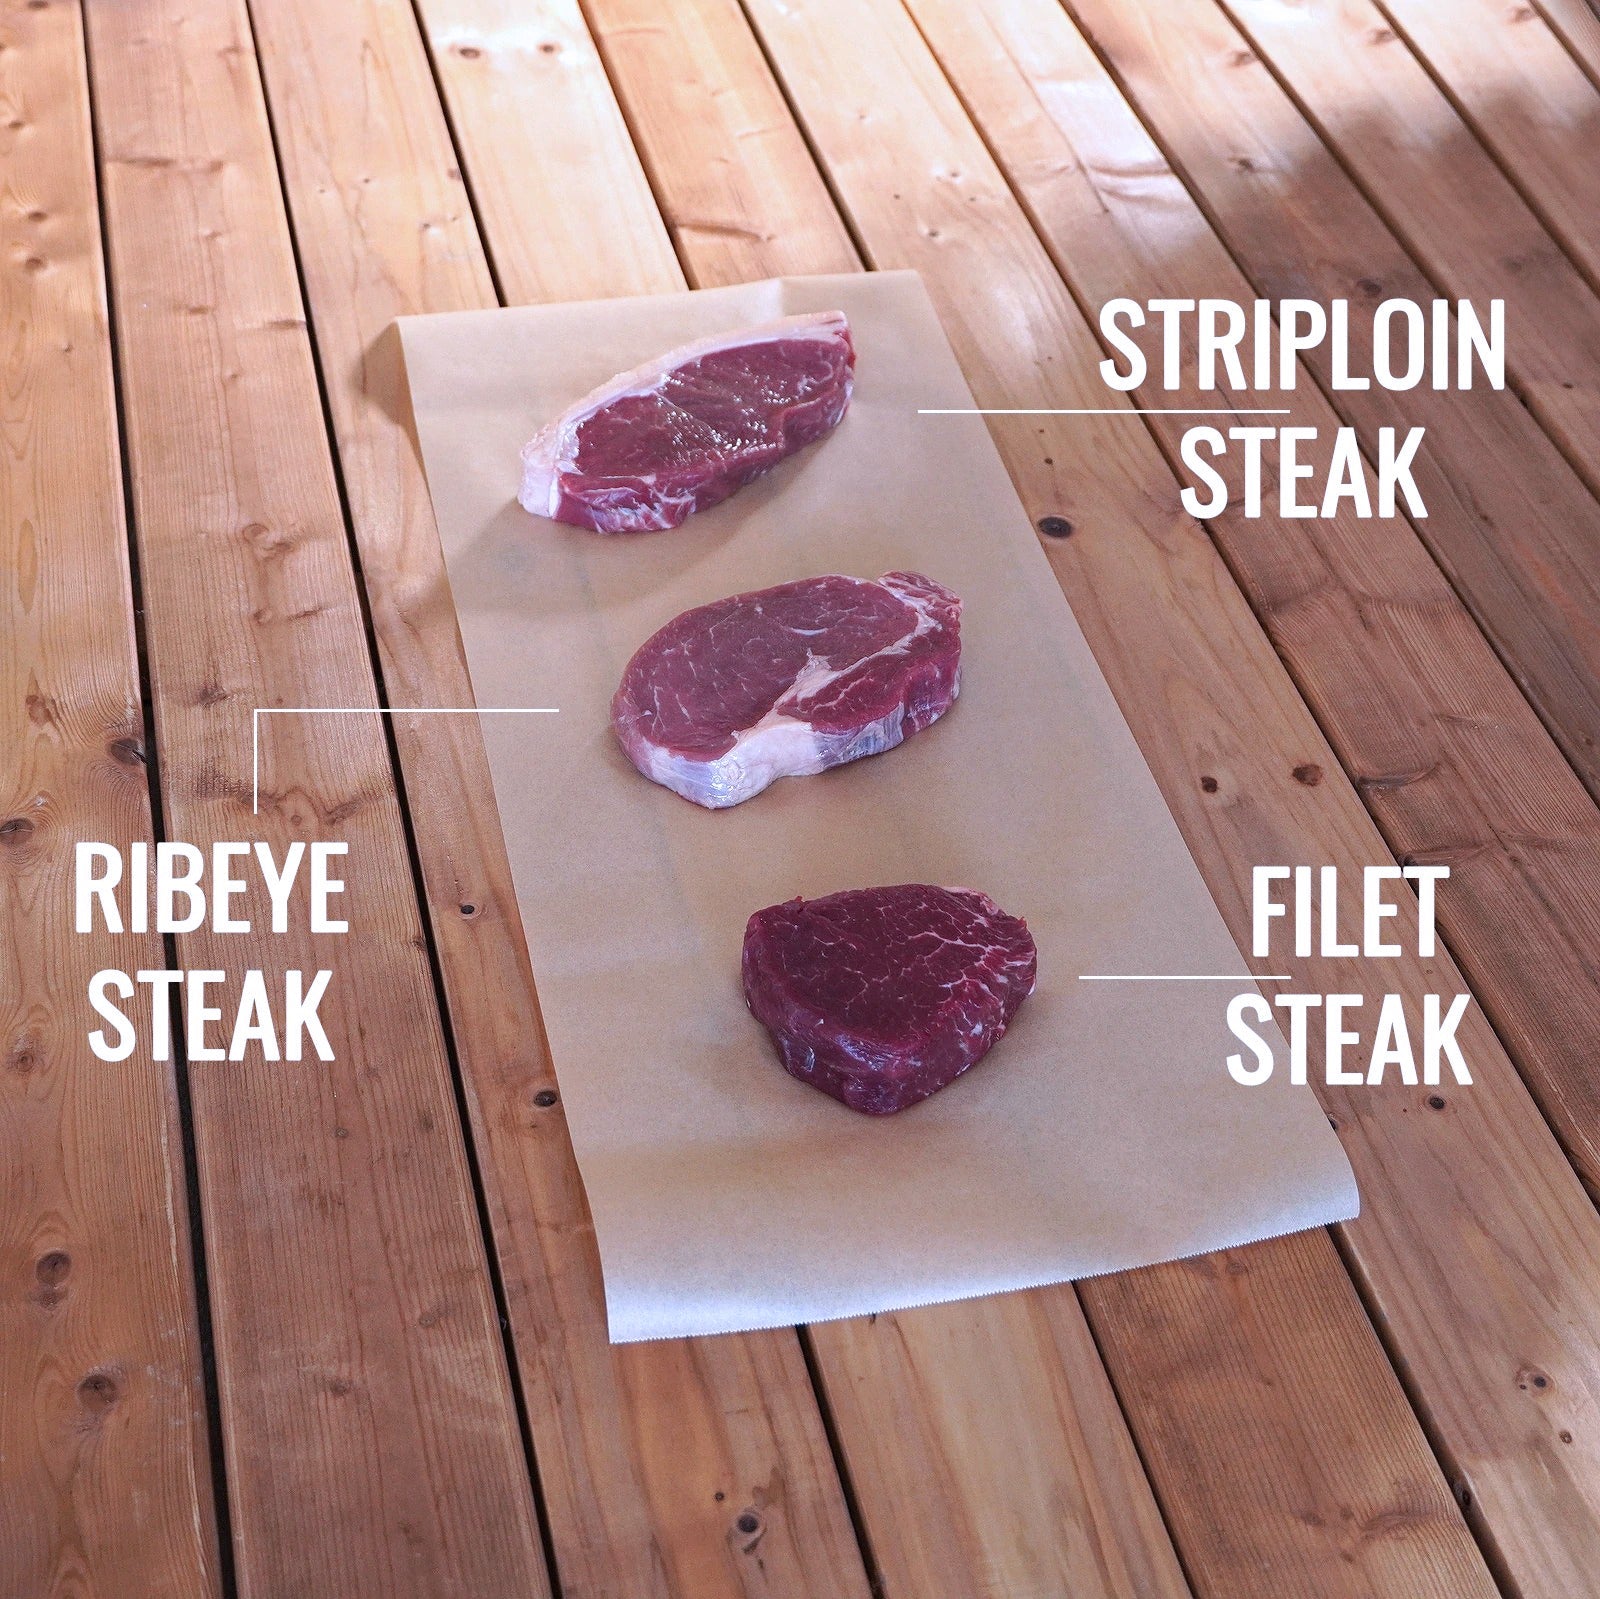 グラスフェッドビーフ 牛肉 ヒレ ステーキ 詰め合わせセット ニュージーランド産 牧草牛 合計10点 (2kg) ホライズンファームズ